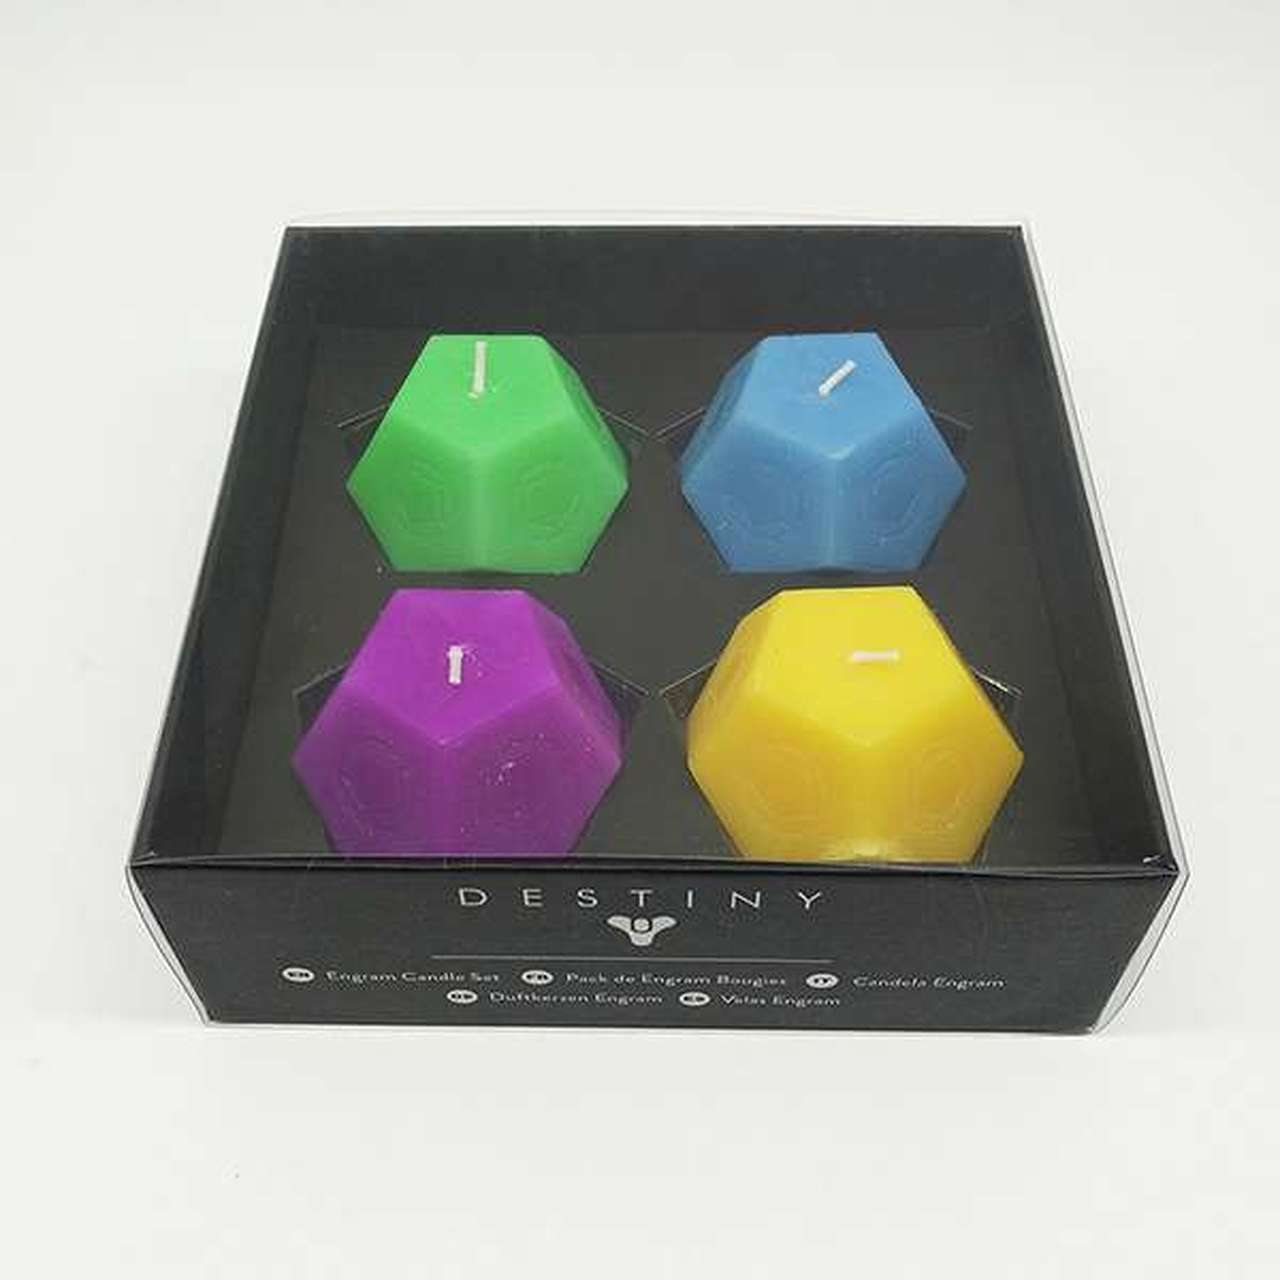 J2Games.com | Official Destiny Engram Candle Set (Toys) (Brand New).